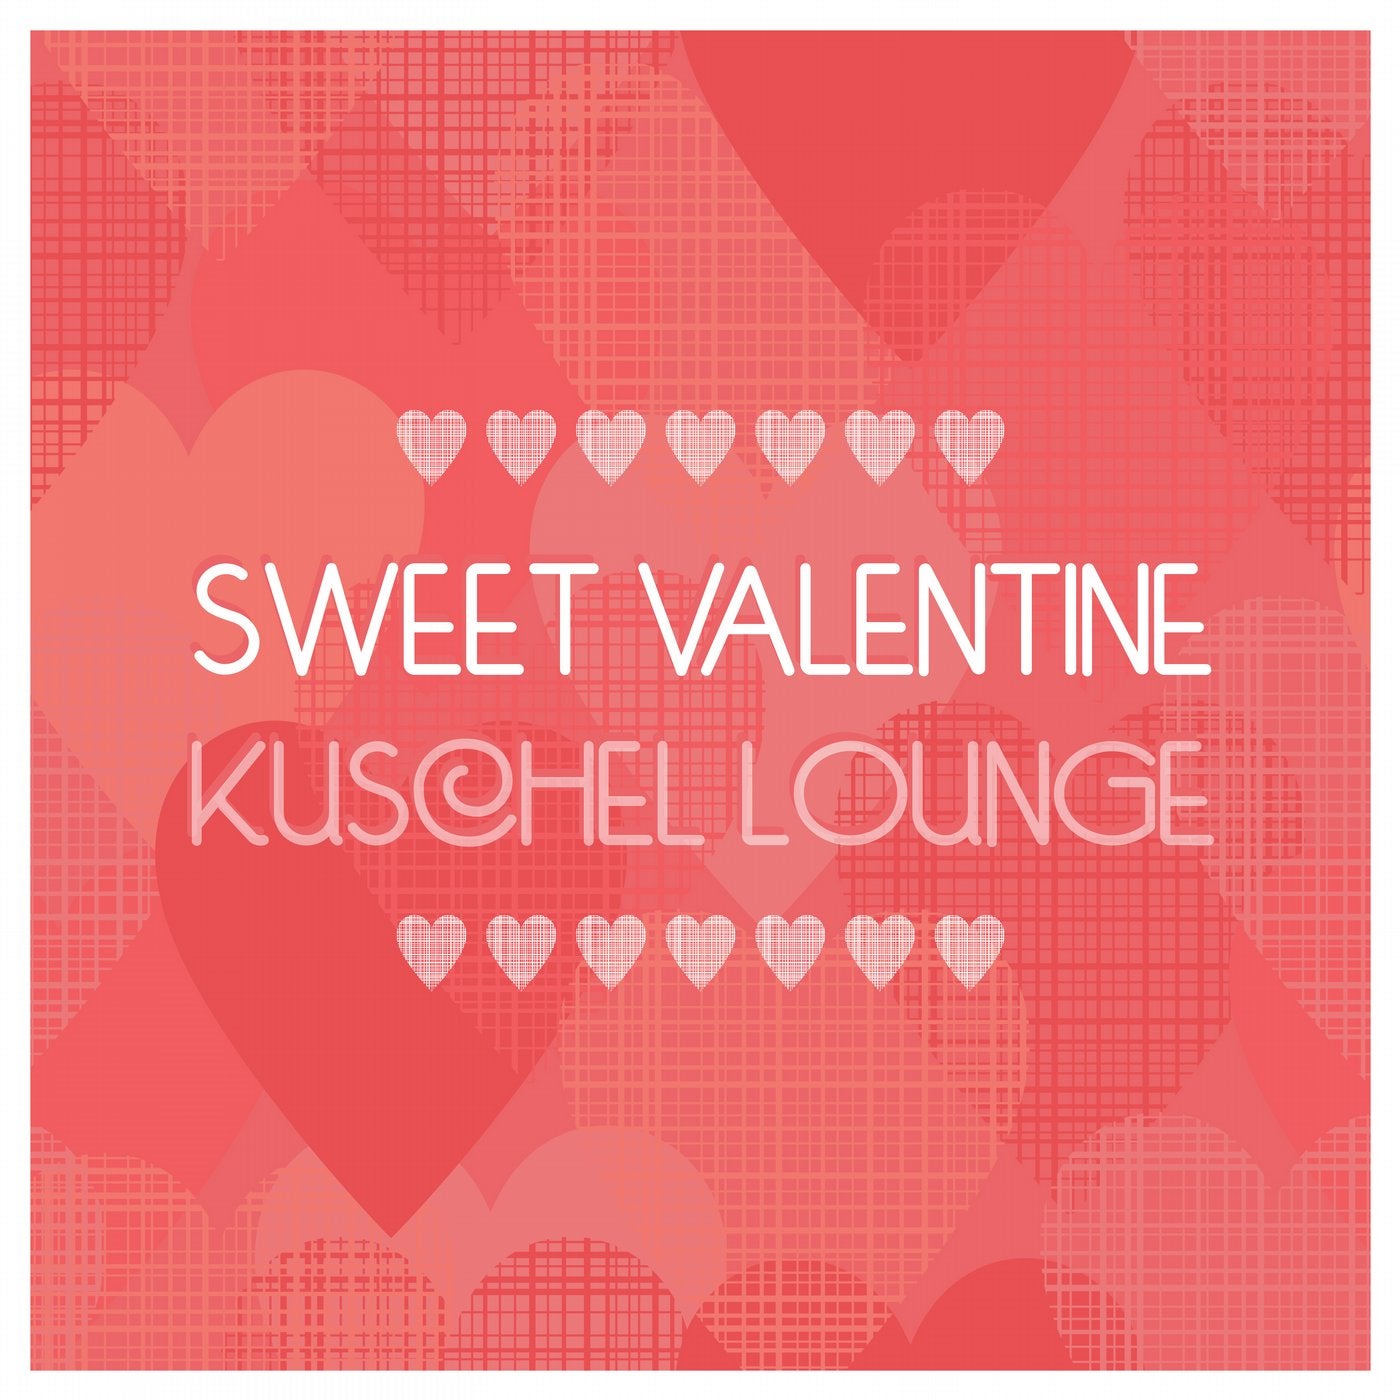 Sweet Valentine Kuschel Lounge